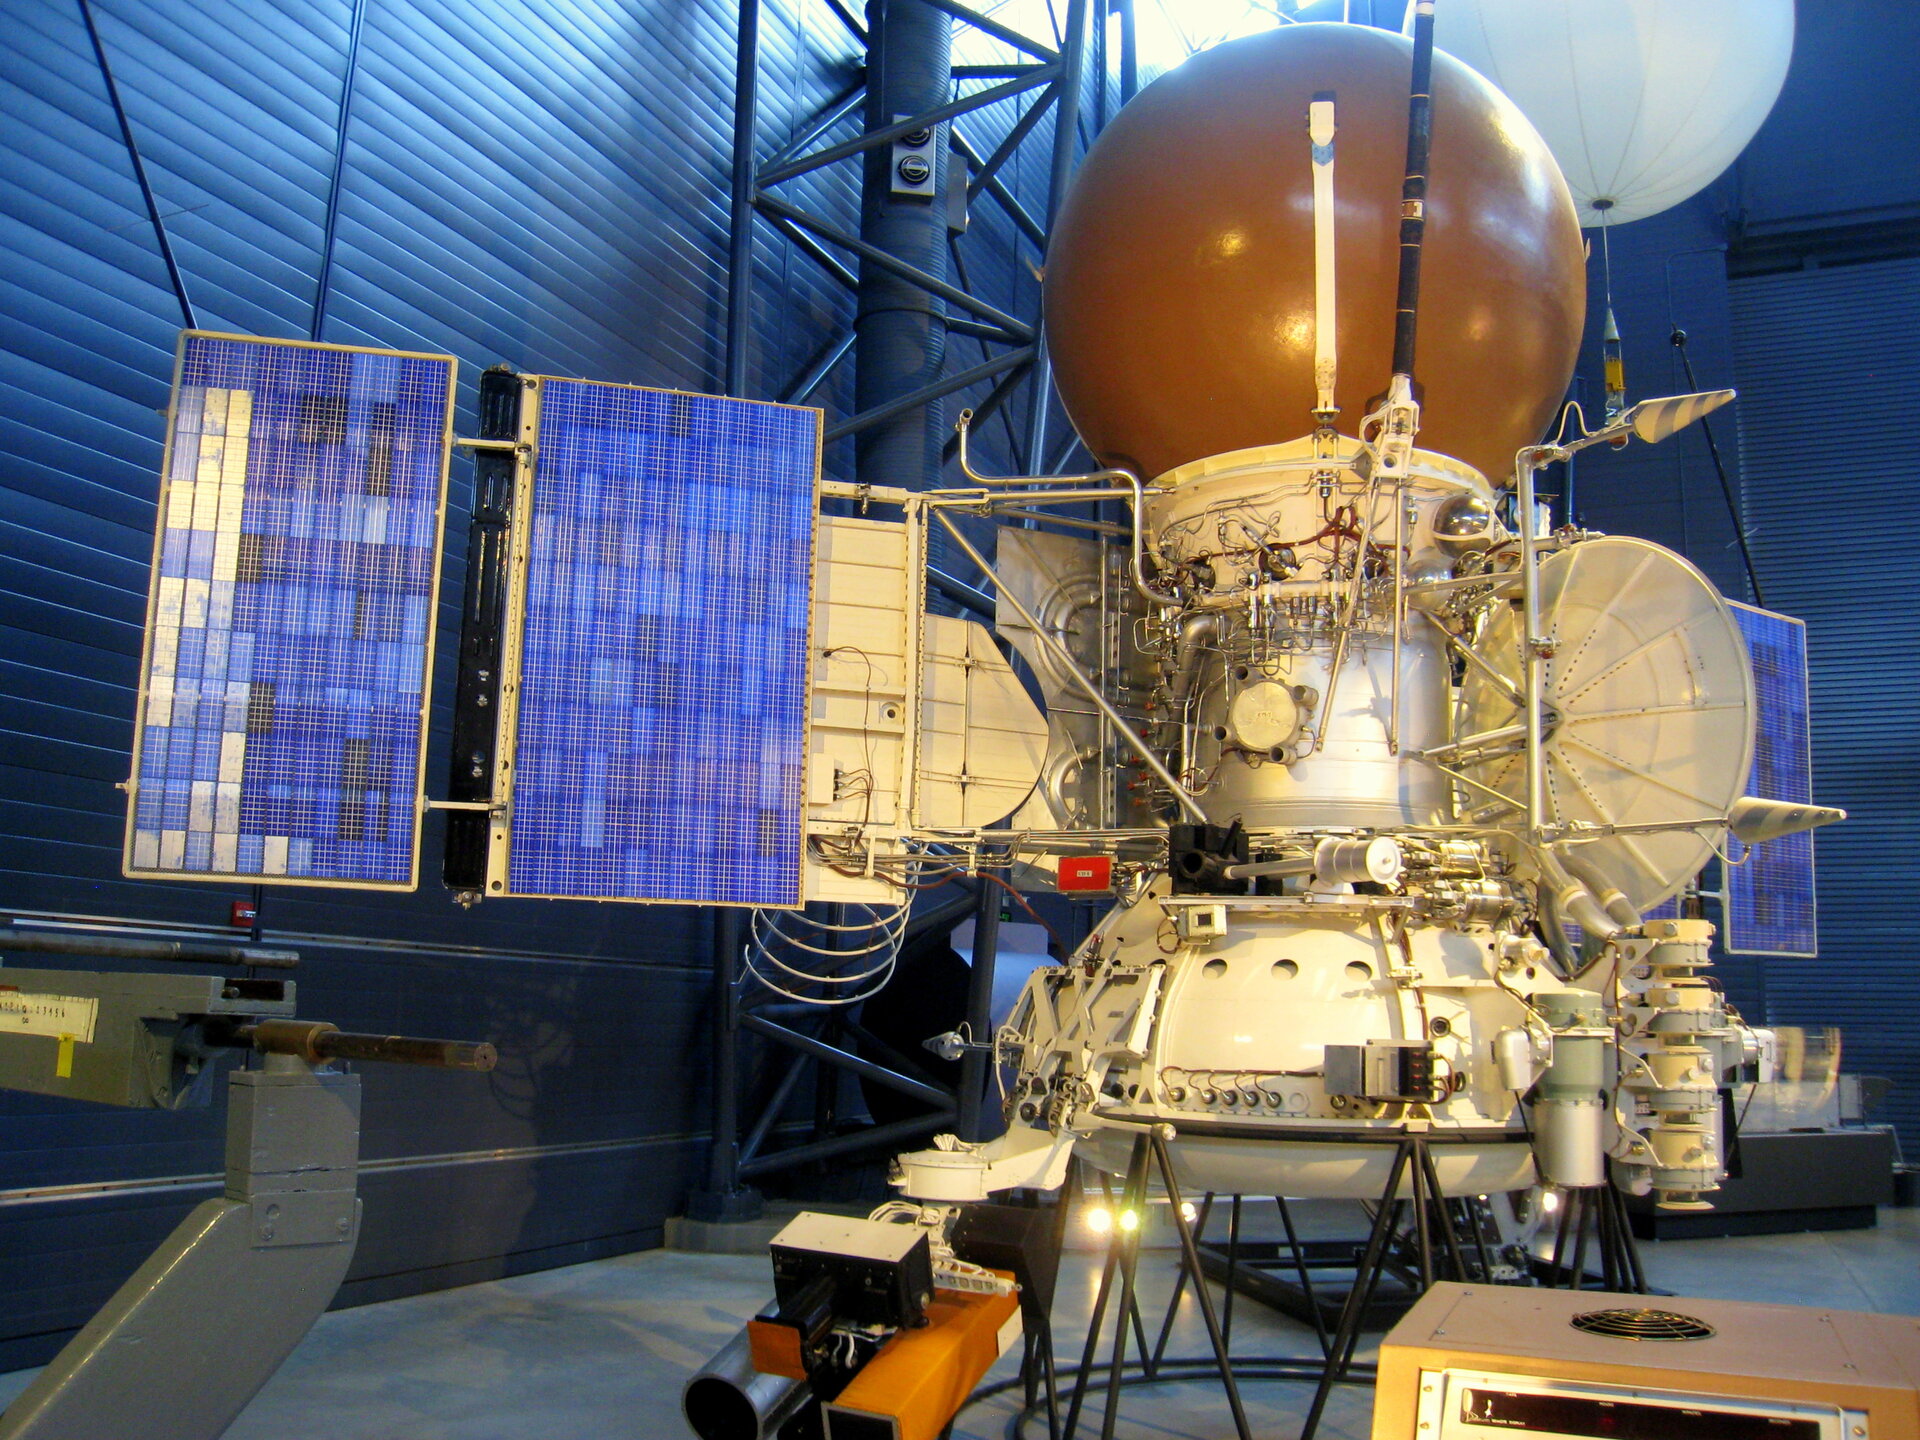 Vega spacecraft